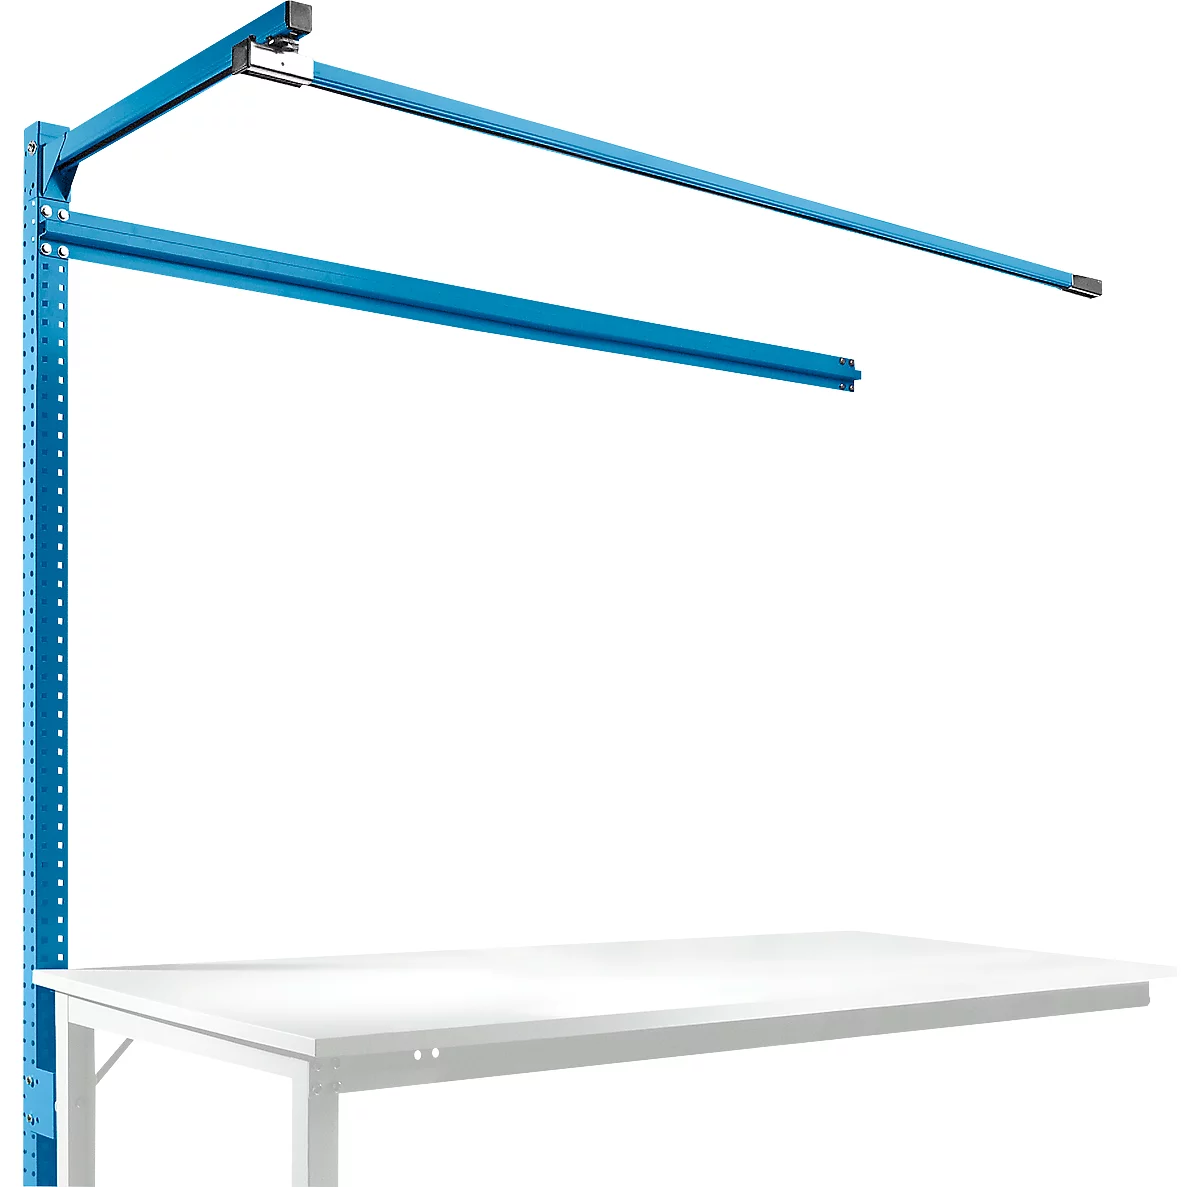 Estructura pórtica adicional con brazo saliente, Mesa de extensión SPEZIAL mesa de trabajo/banco de trabajo UNIVERSAL/PROFI, 1750 mm, azul luminoso